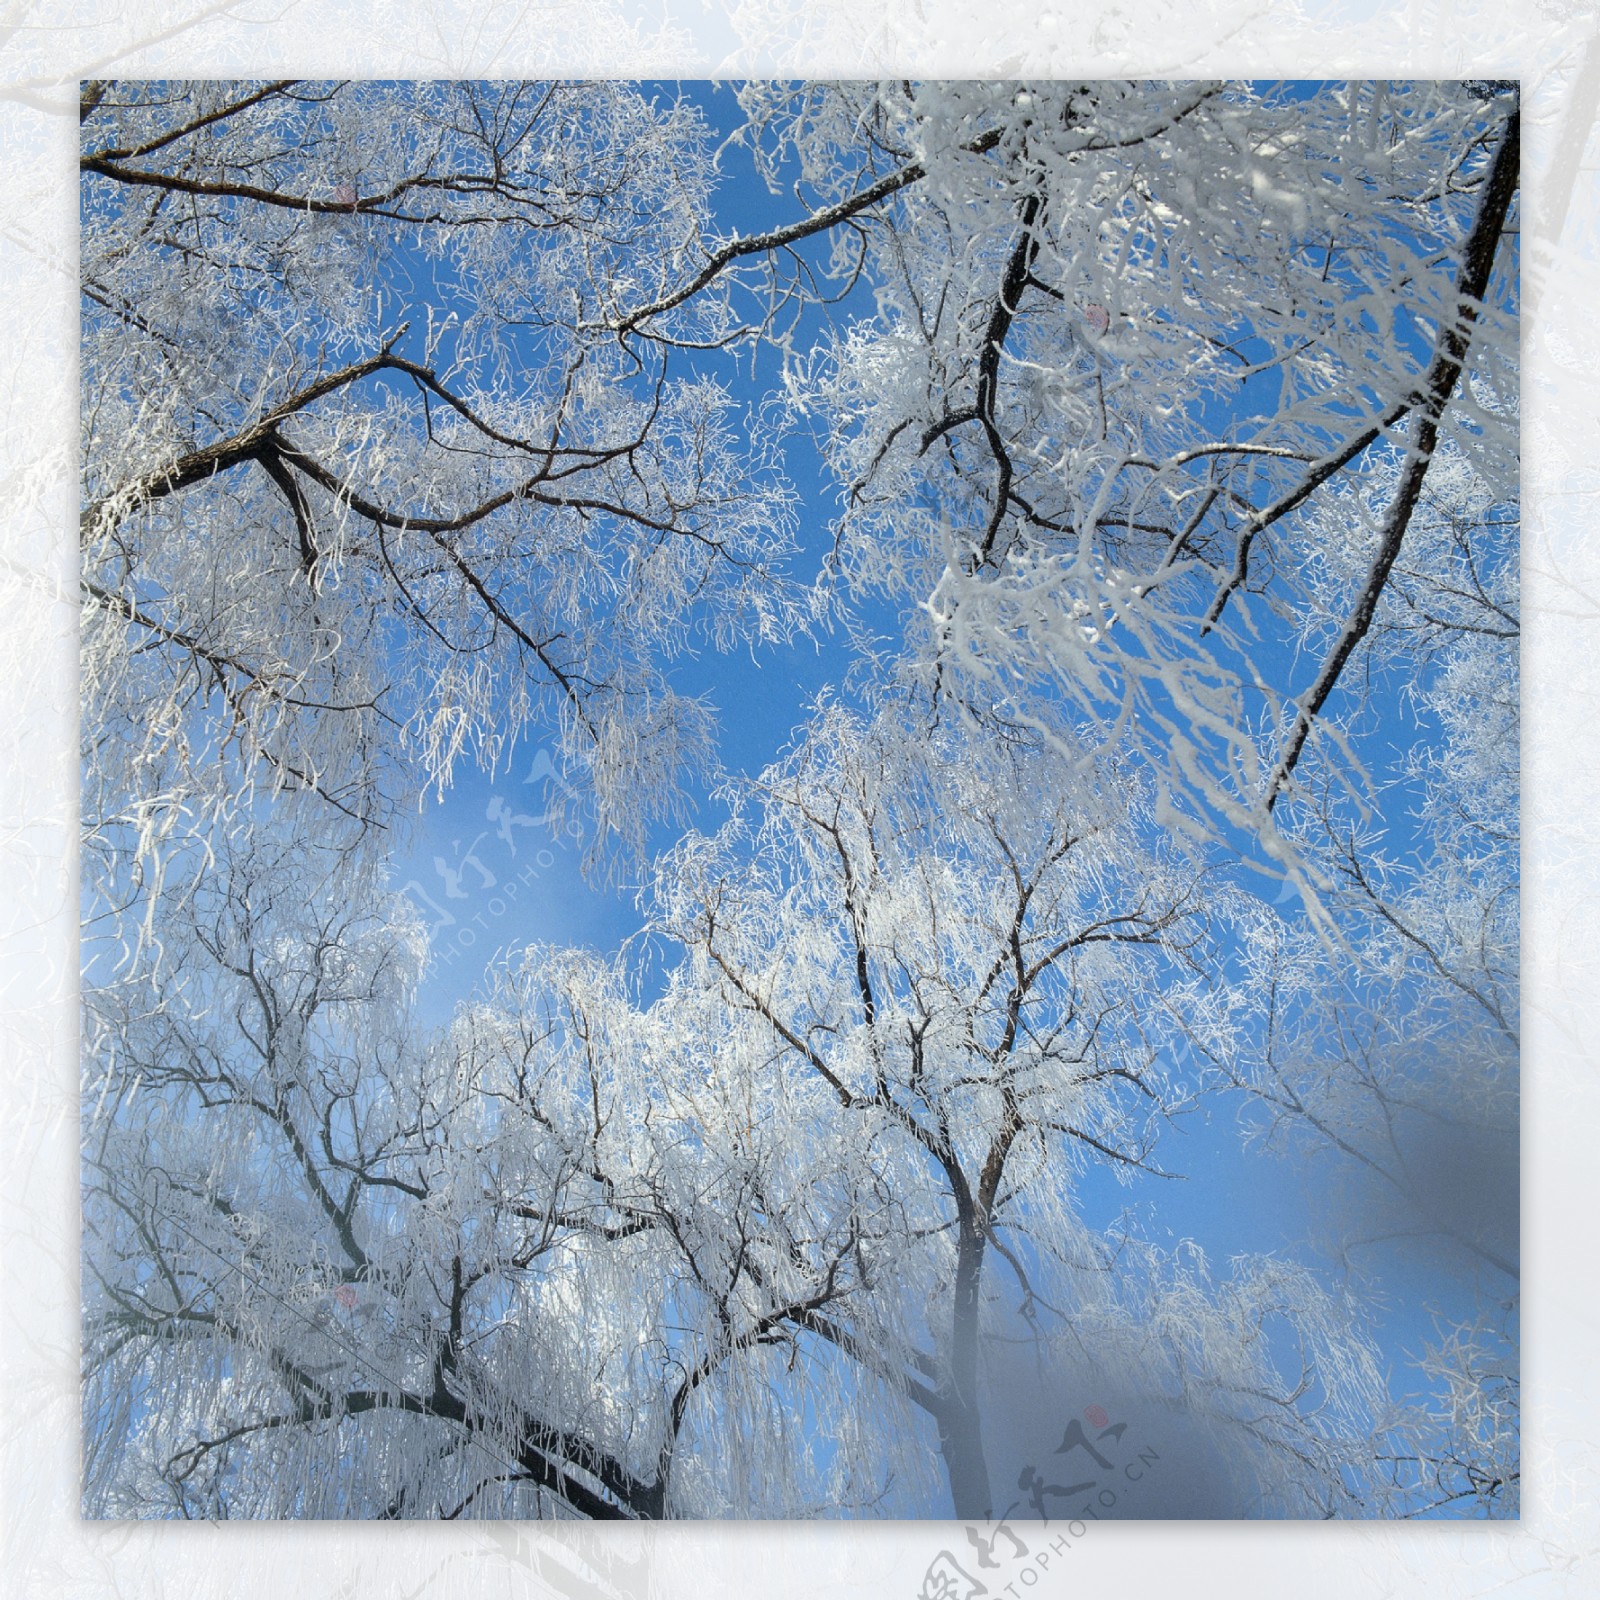 树木上的冰花摄影